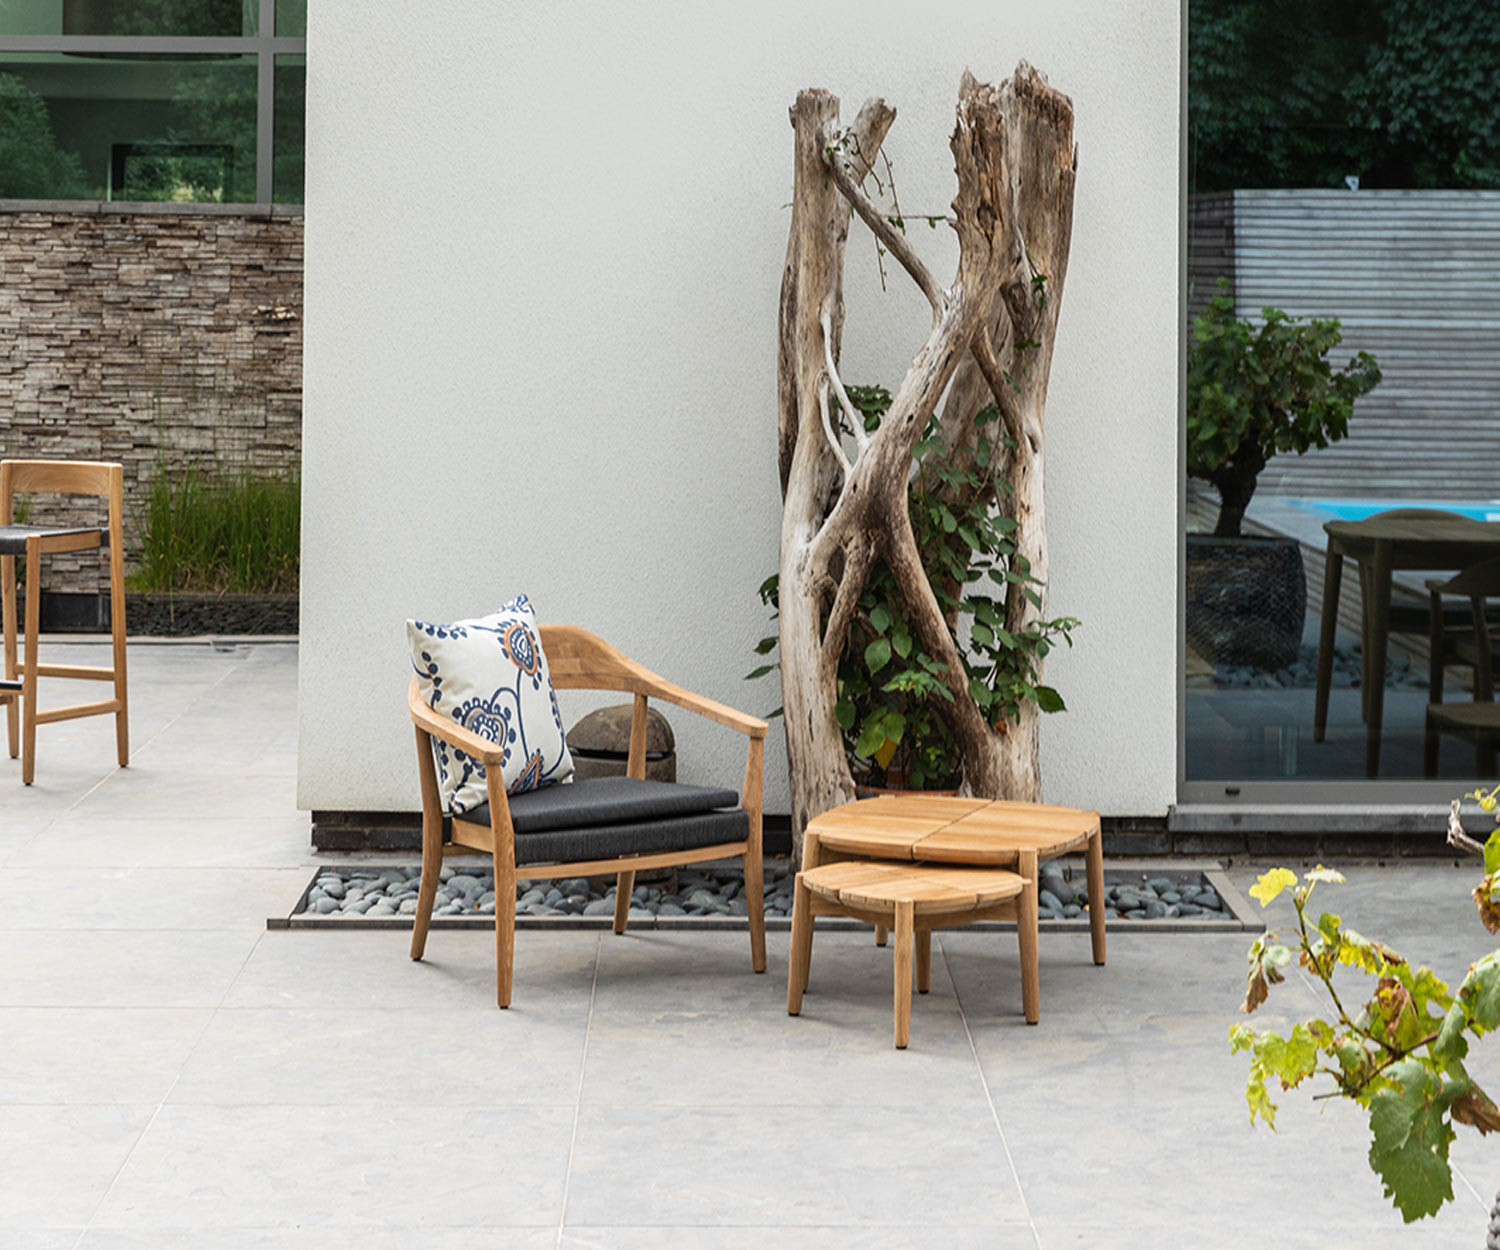 Quadratischer Oasiq Copenhagen Outdoor Tisch mit Stuhl und Baum auf Terrasse